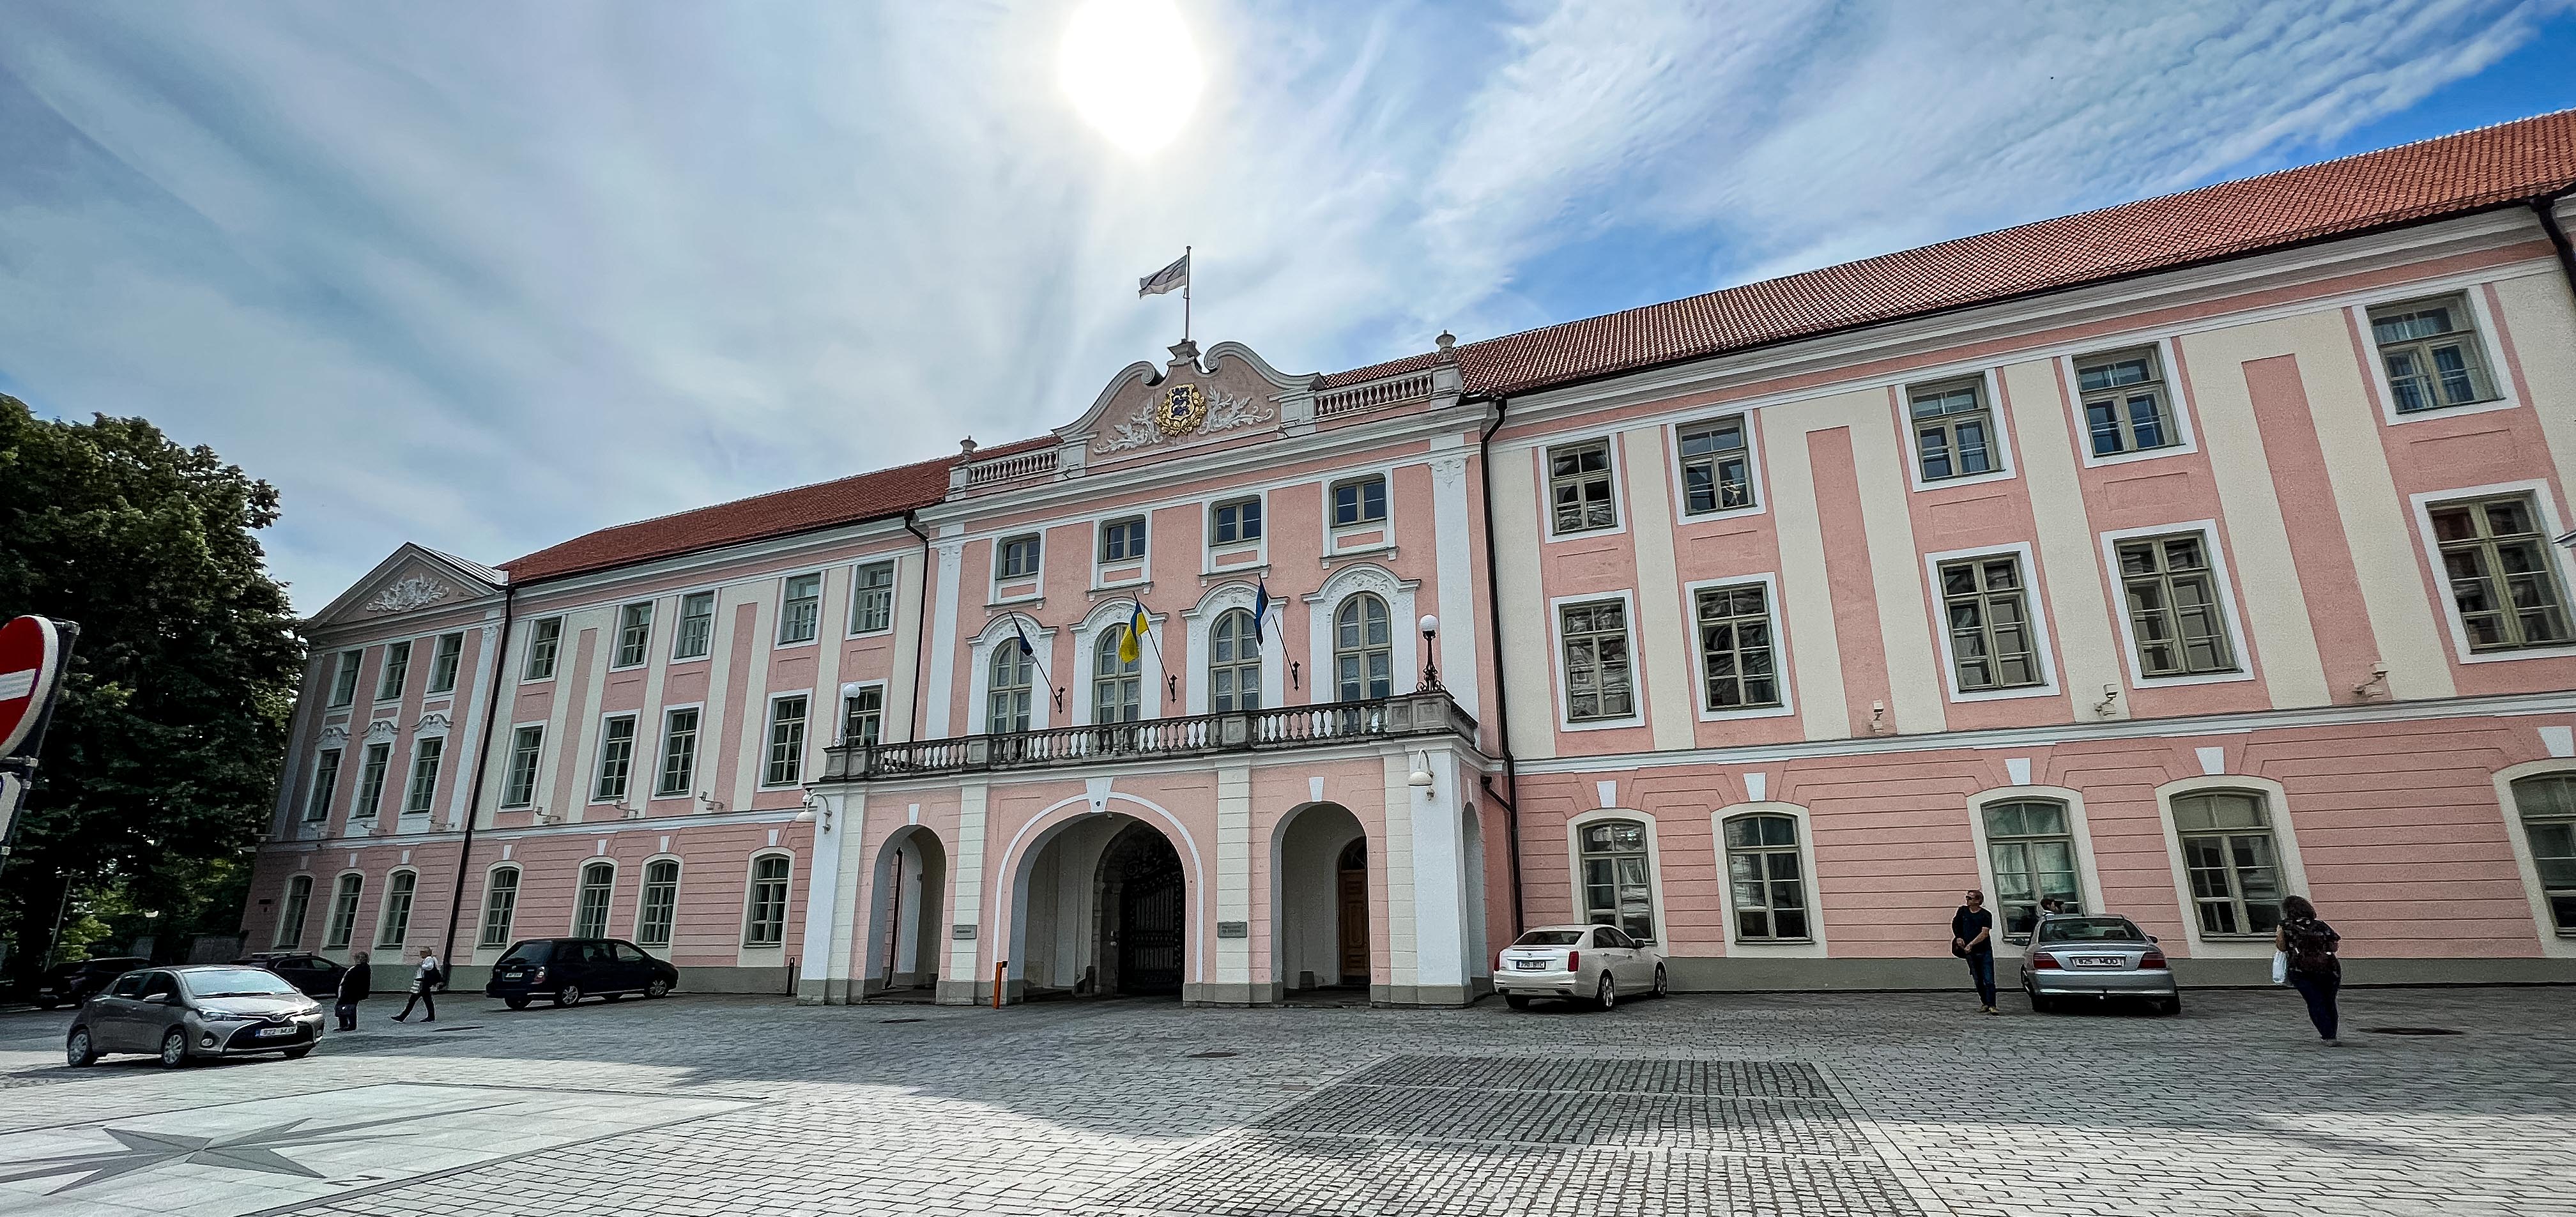 Lista Tallinn Castelo de Toompea, Prédio do Parlamento da Estônia-Riigikogu hoone